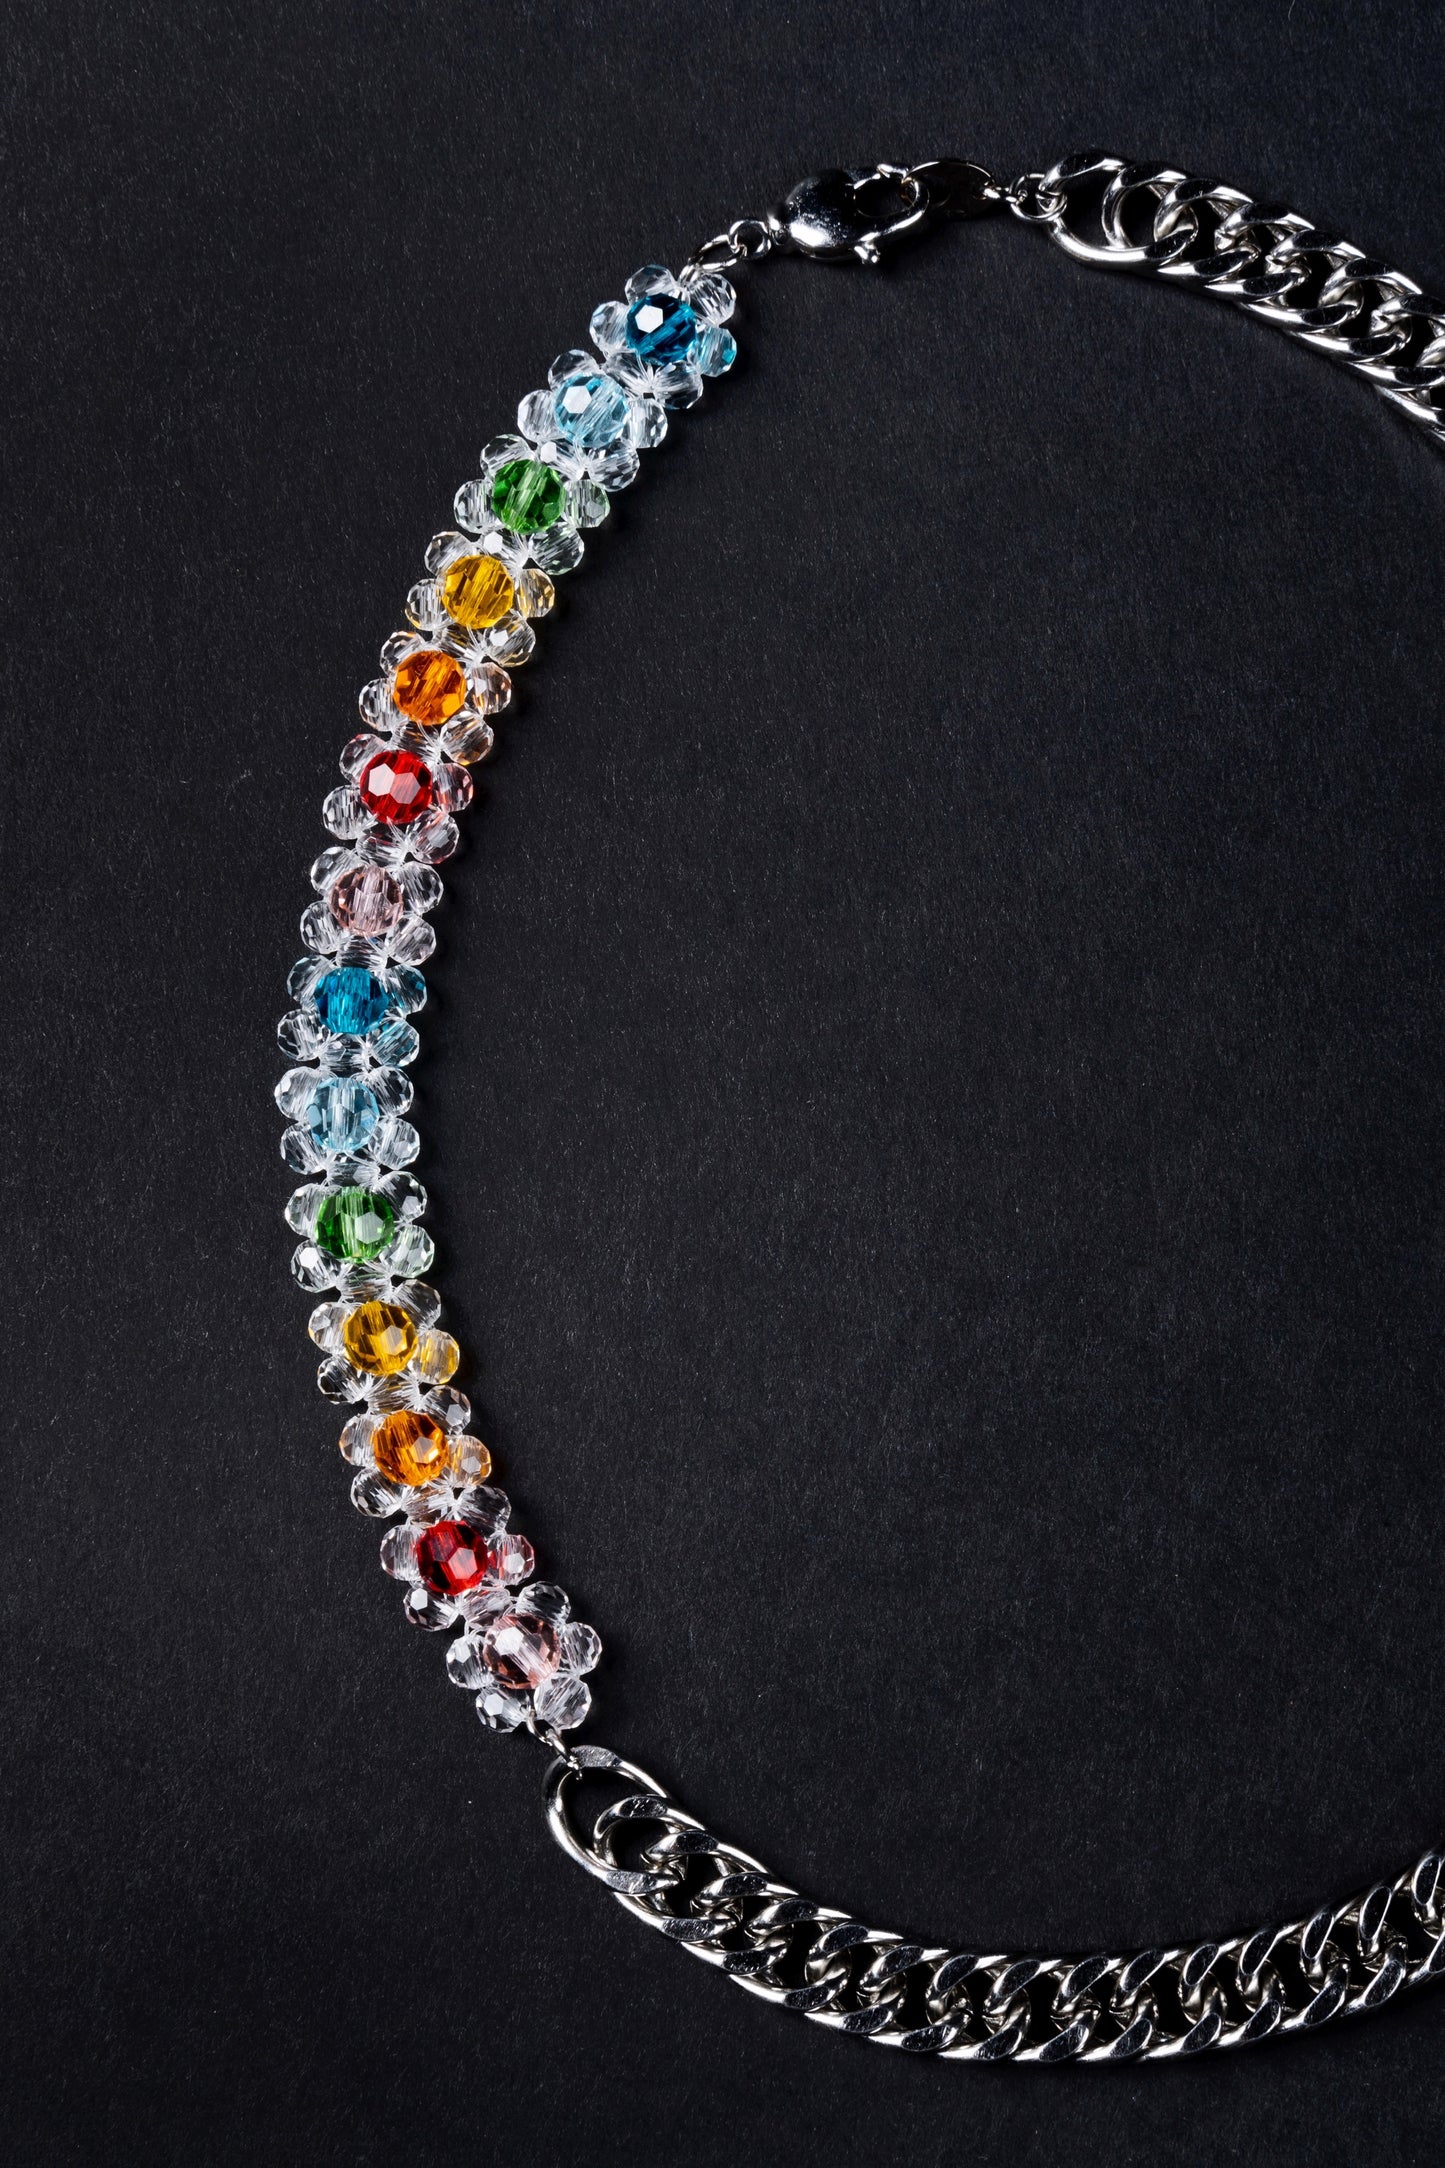 Crystal Bead Rainbow Beaded Chain Necklace Clear